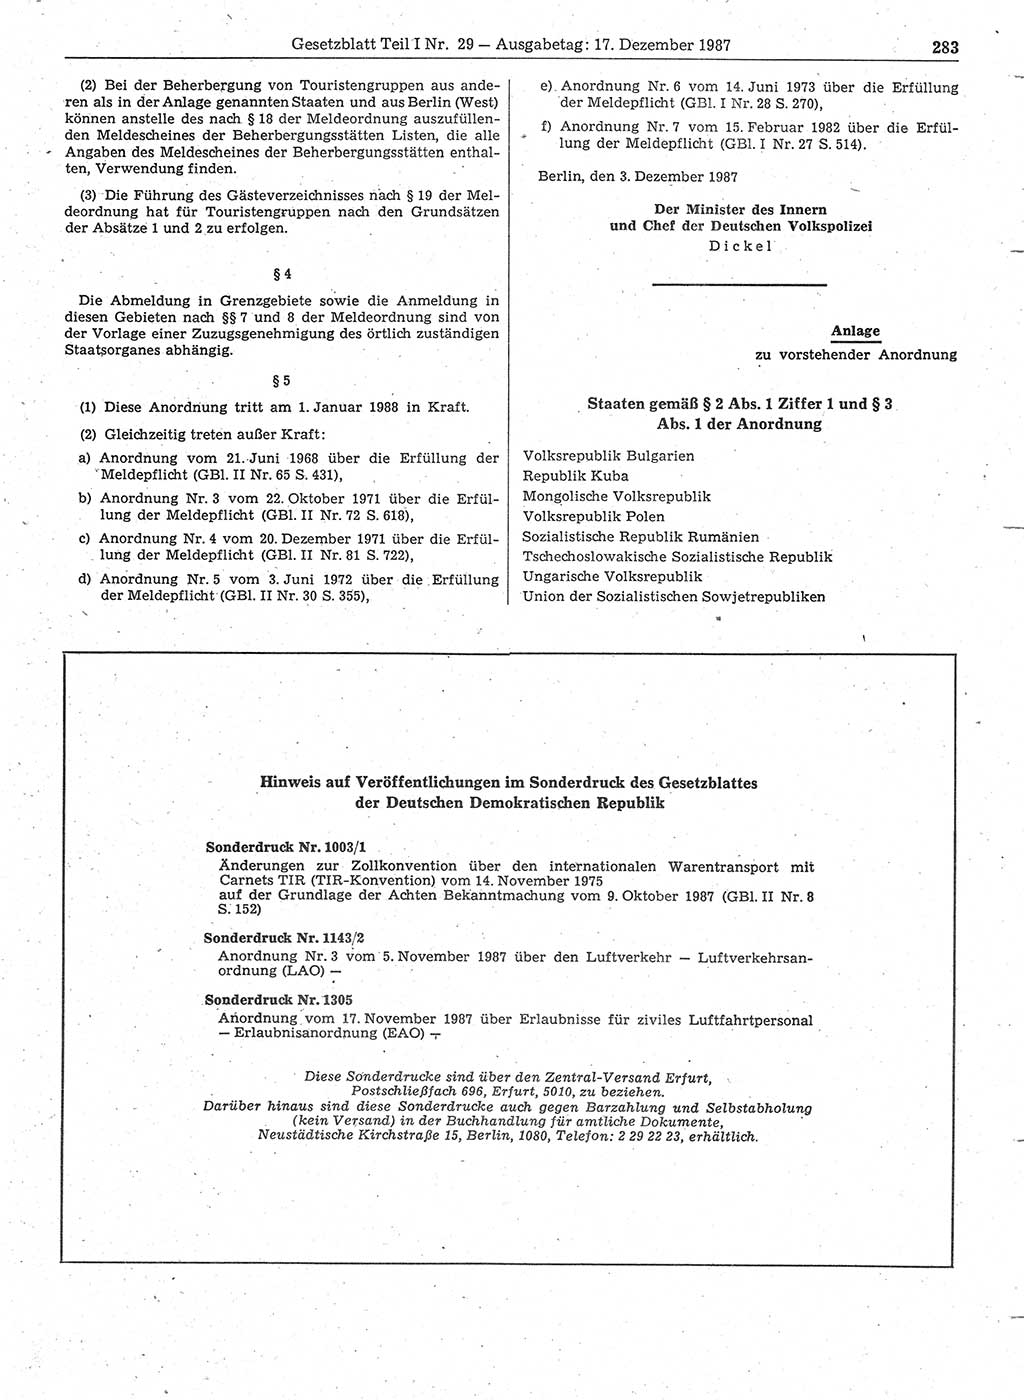 Gesetzblatt (GBl.) der Deutschen Demokratischen Republik (DDR) Teil Ⅰ 1987, Seite 283 (GBl. DDR Ⅰ 1987, S. 283)